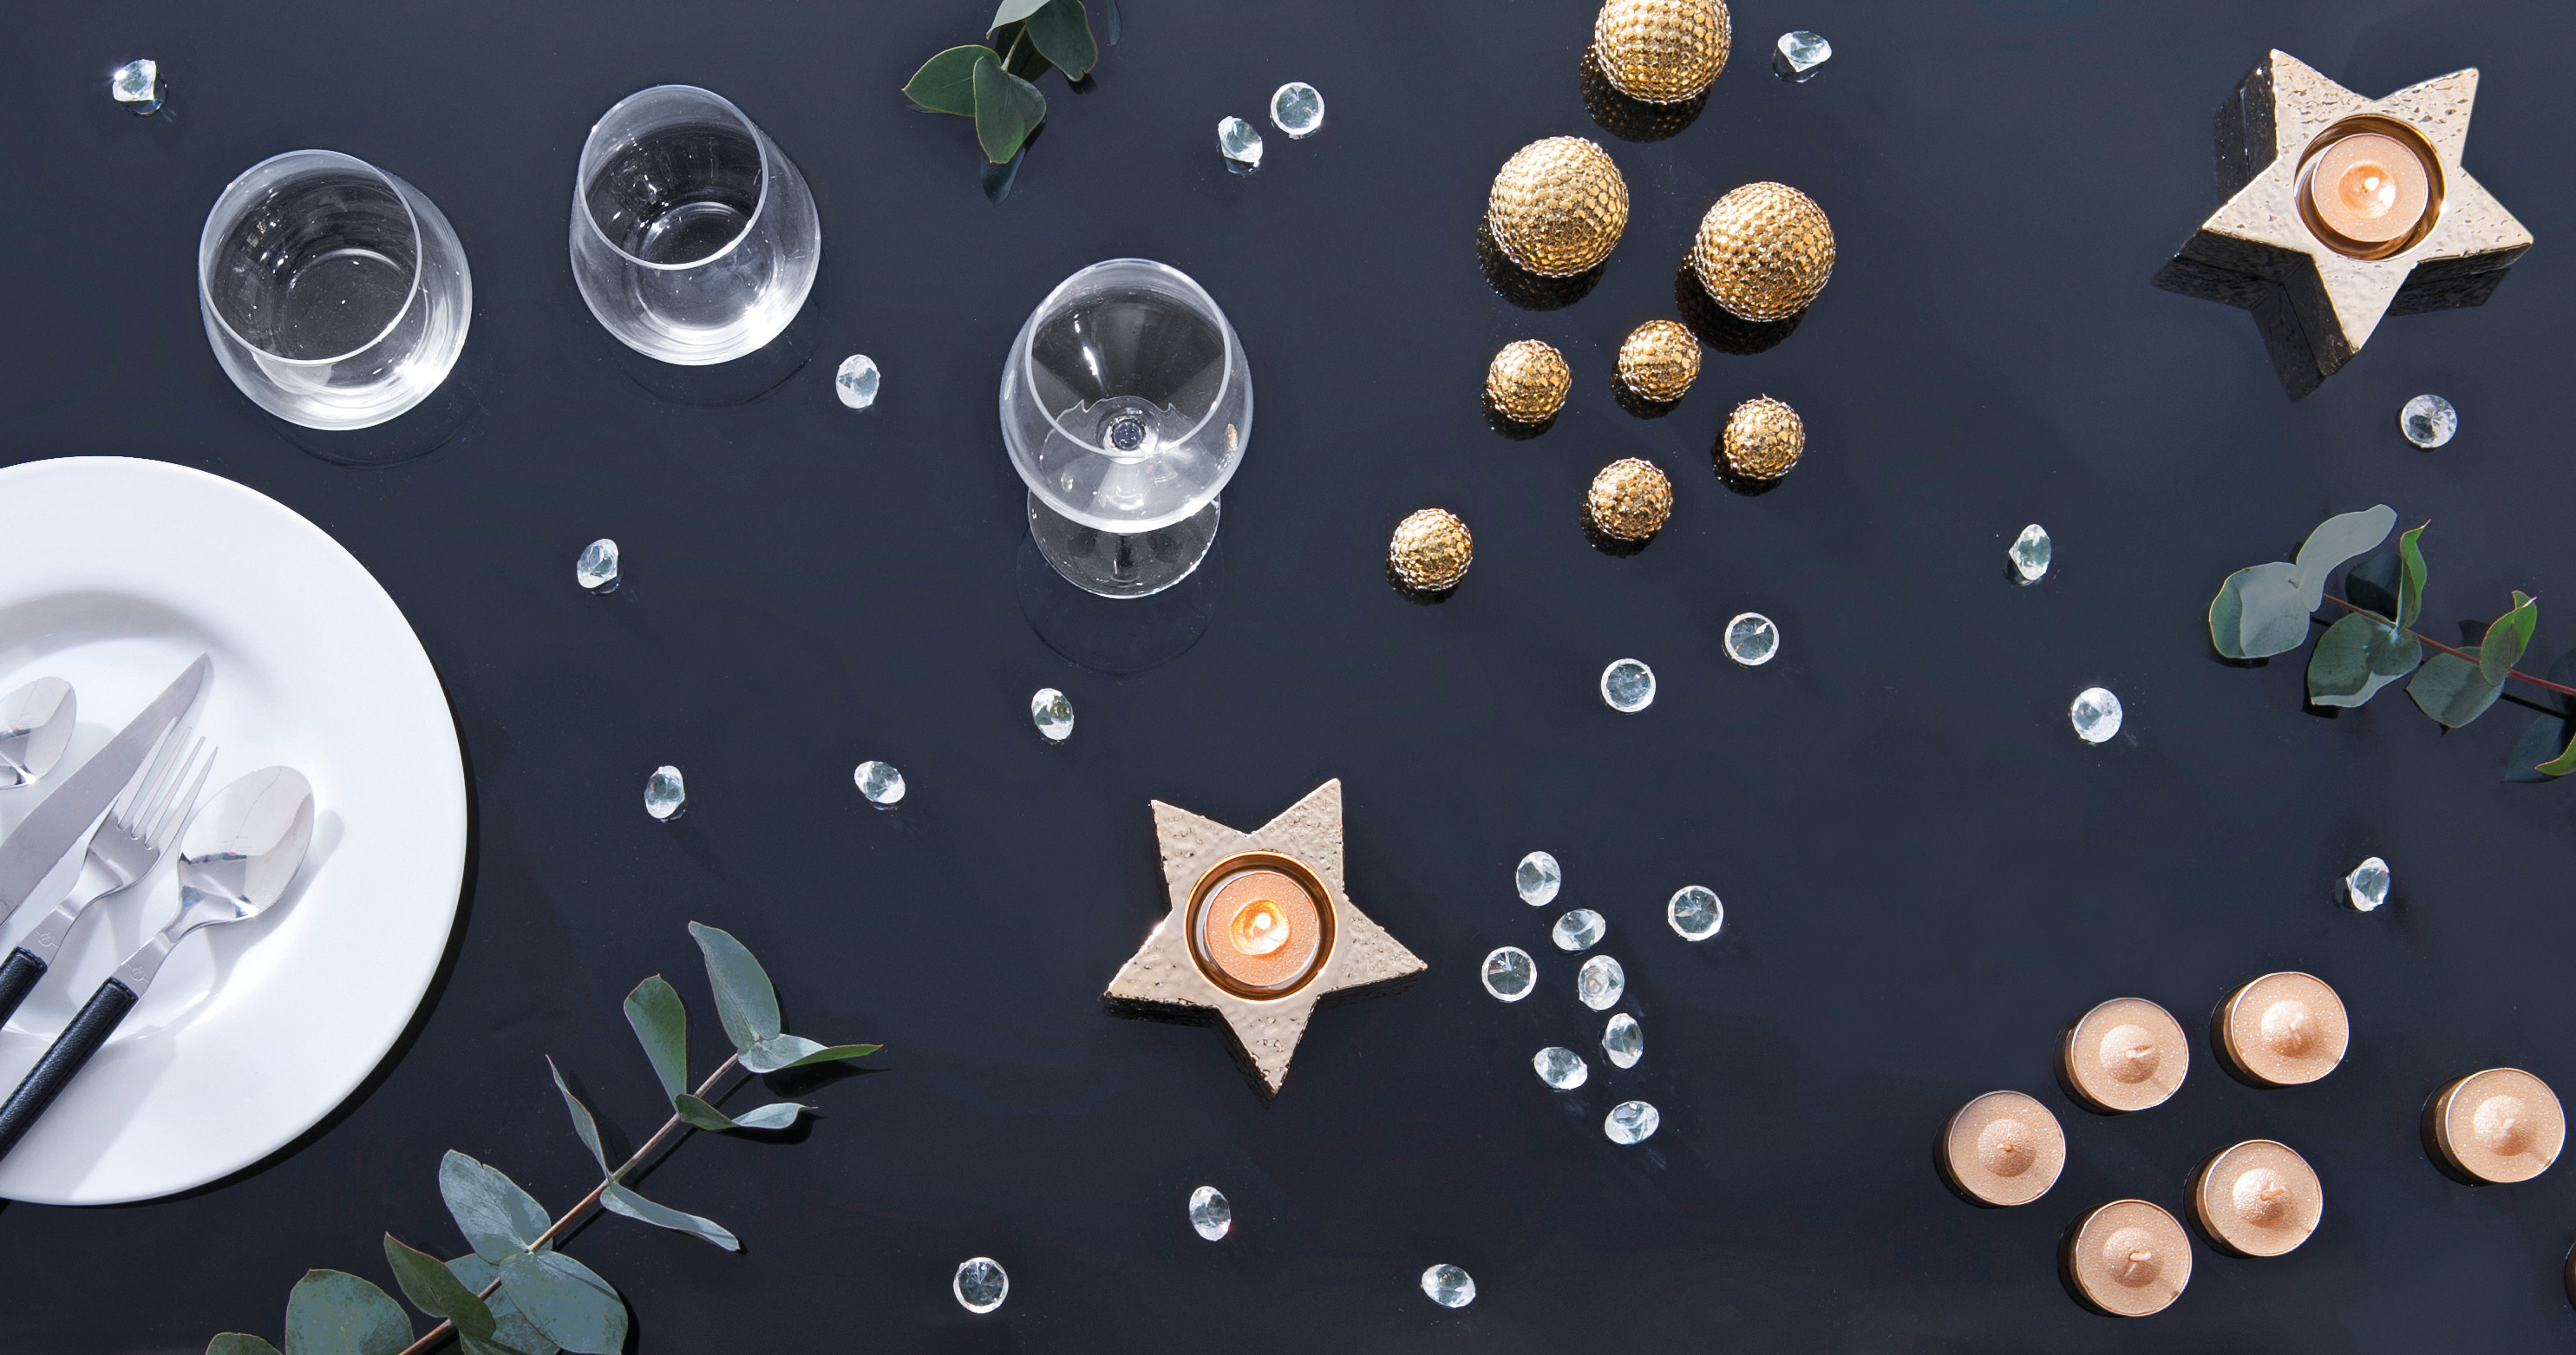 Pour l'apéritif du Nouvel An, voici 4 recettes originales - Blog La Foir'Fouille - On adore